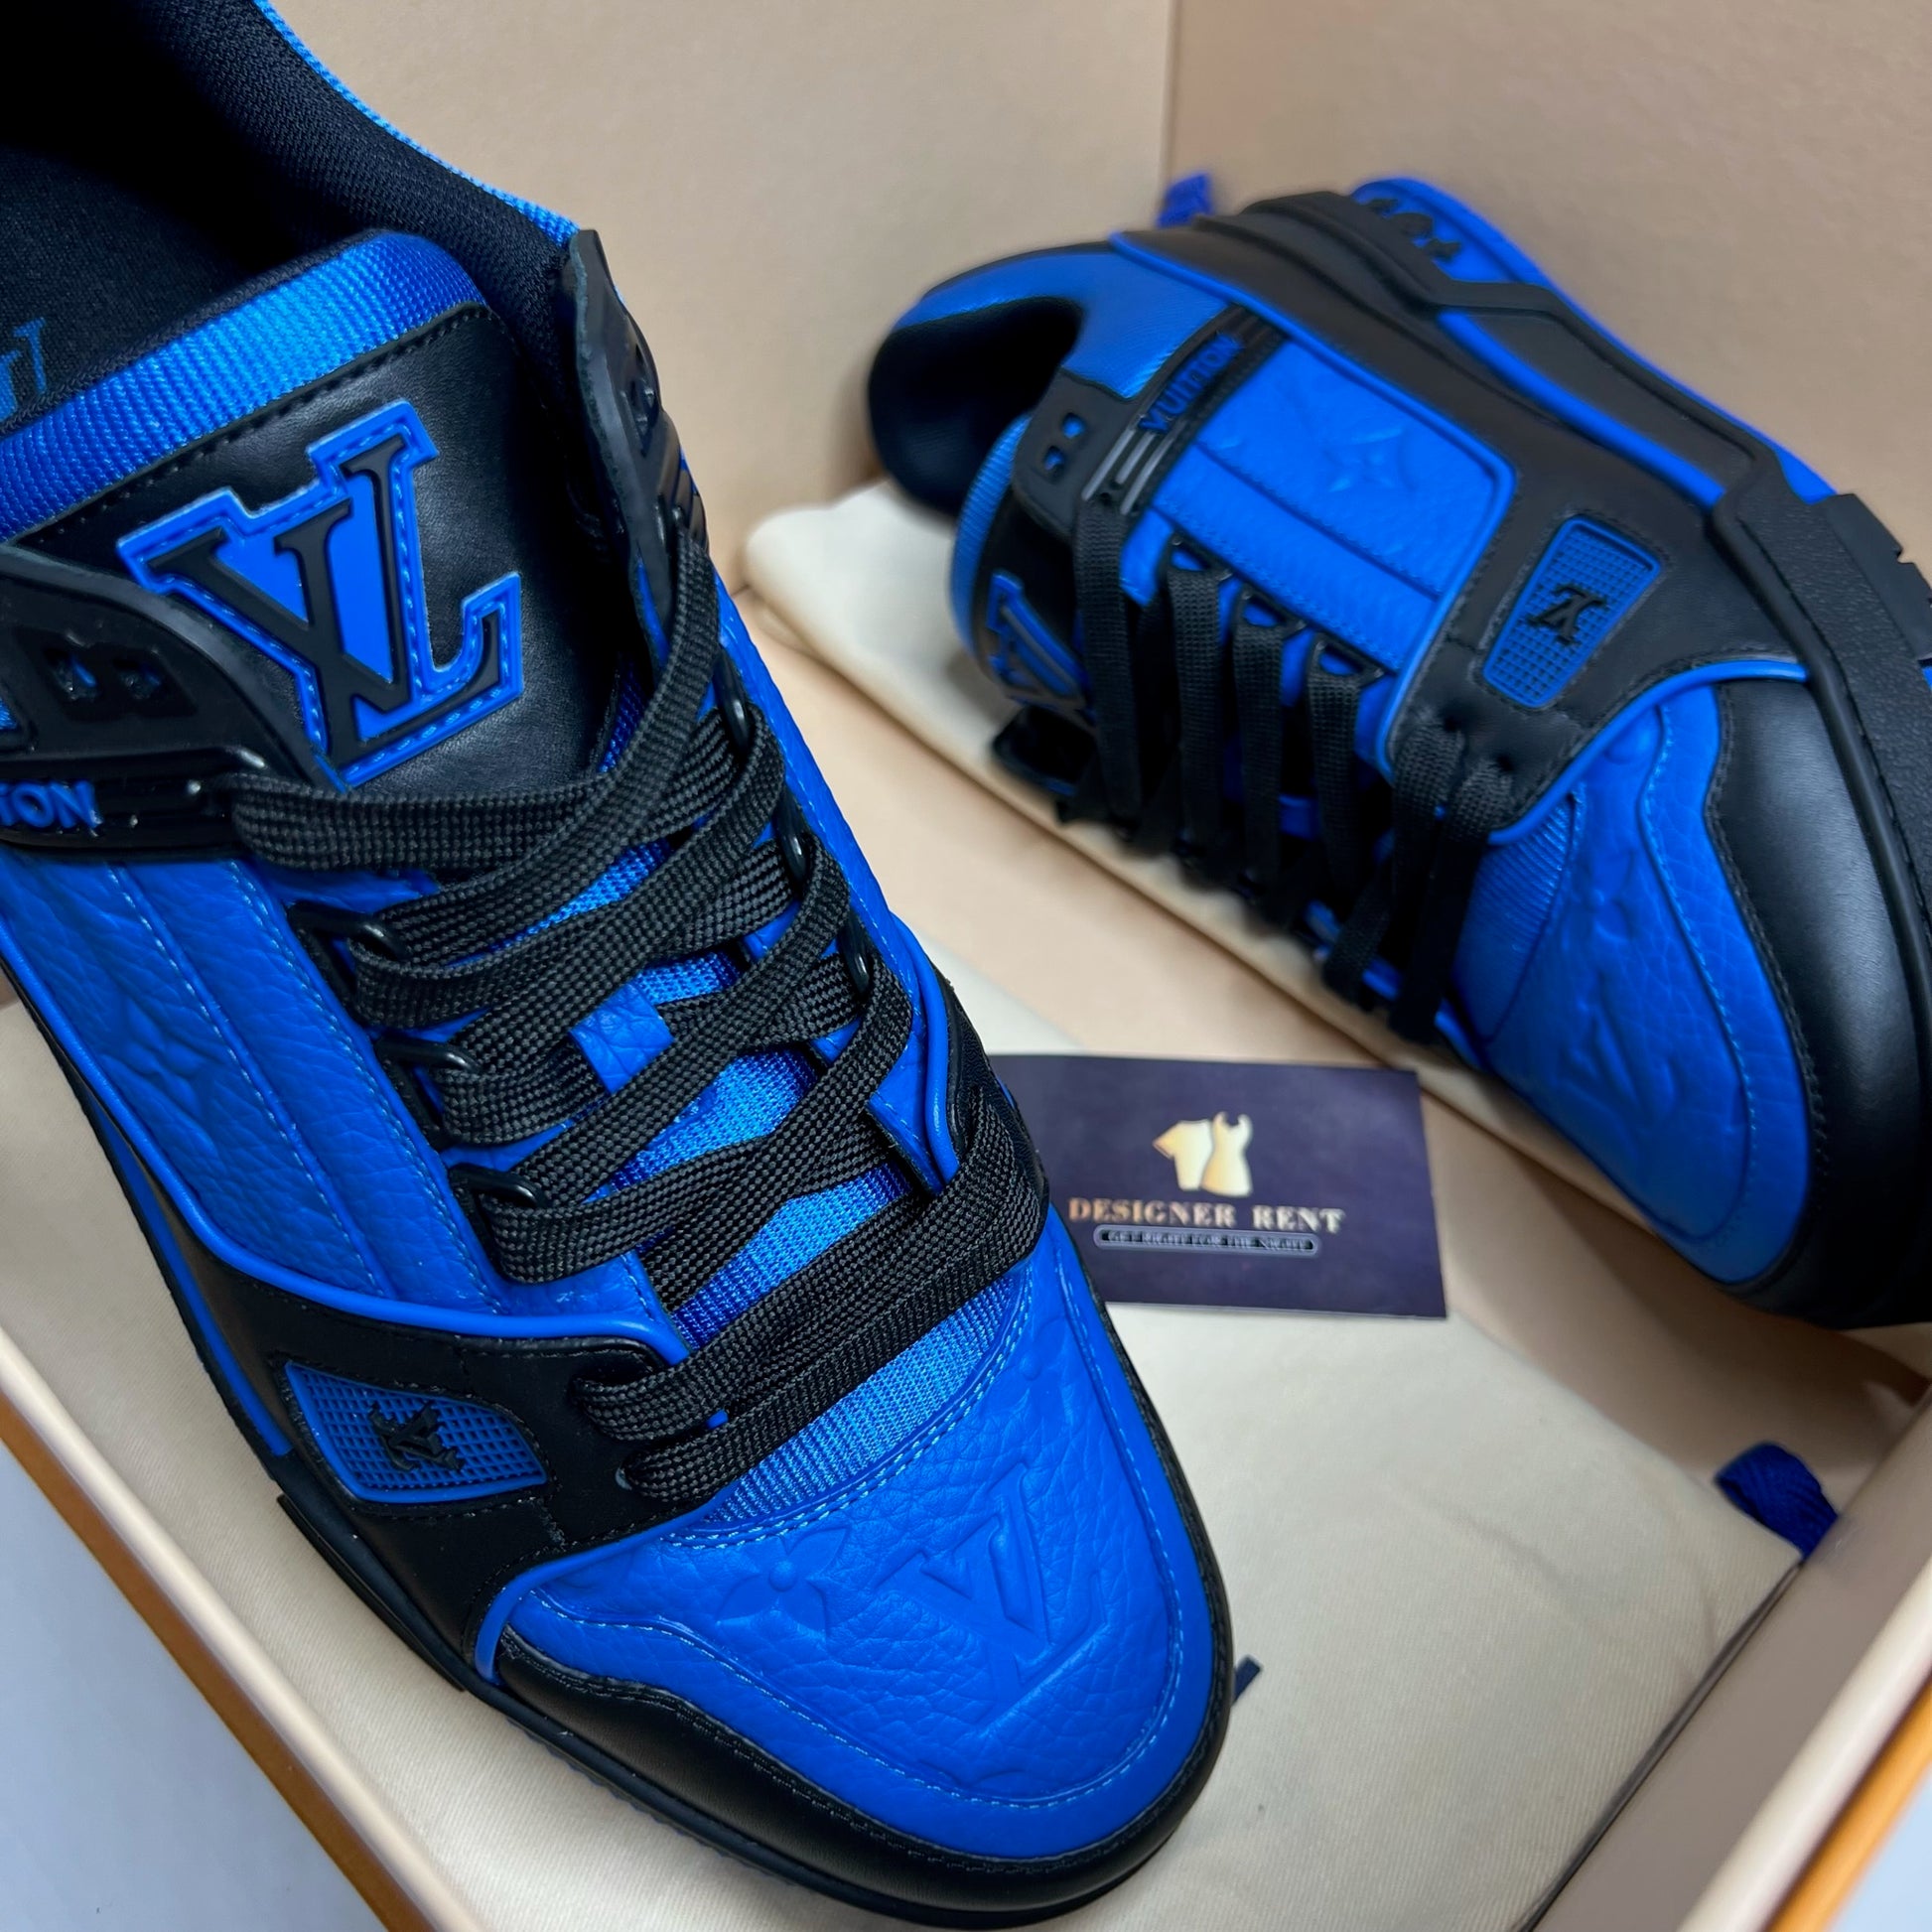 LOUIS VUITTON LV Trainer Sneaker Blue. Size 8